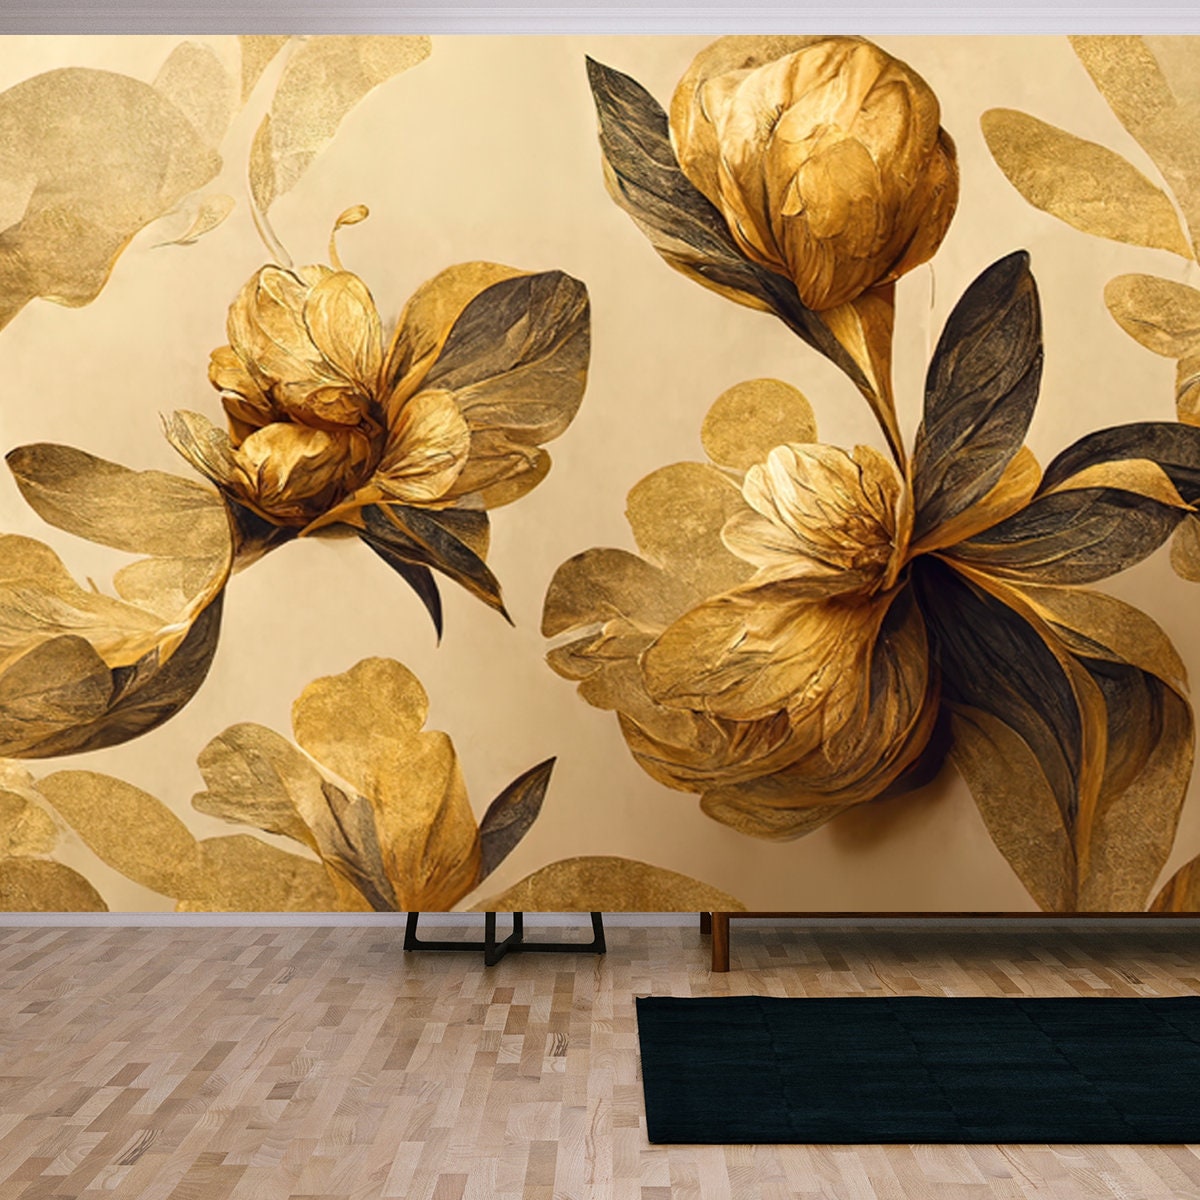 4K Golden Floral Background, Abstract Vintage Flower Design Wallpaper Living Room Mural